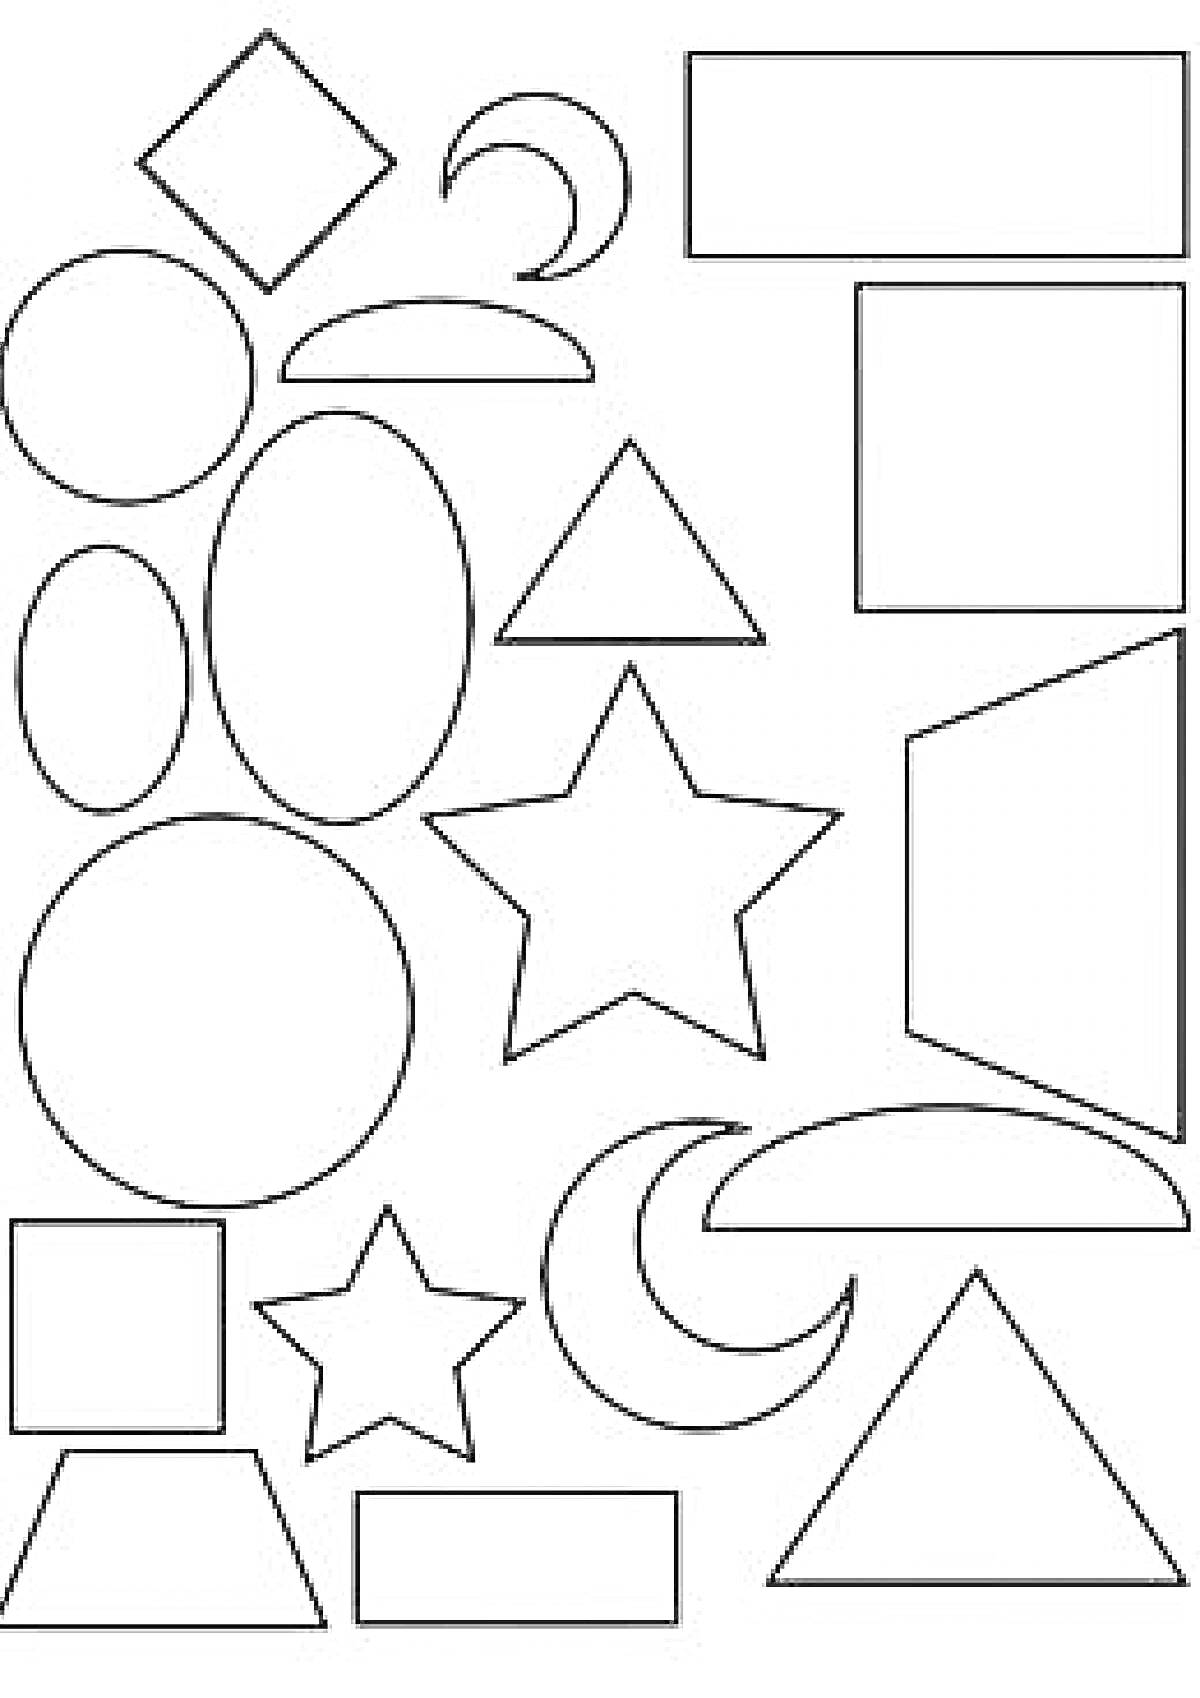 Геометрические фигуры: квадраты, круги, овалы, прямоугольники, треугольники, пятиконечные звезды, полумесяцы, трапеция, ромб, параллелограмм